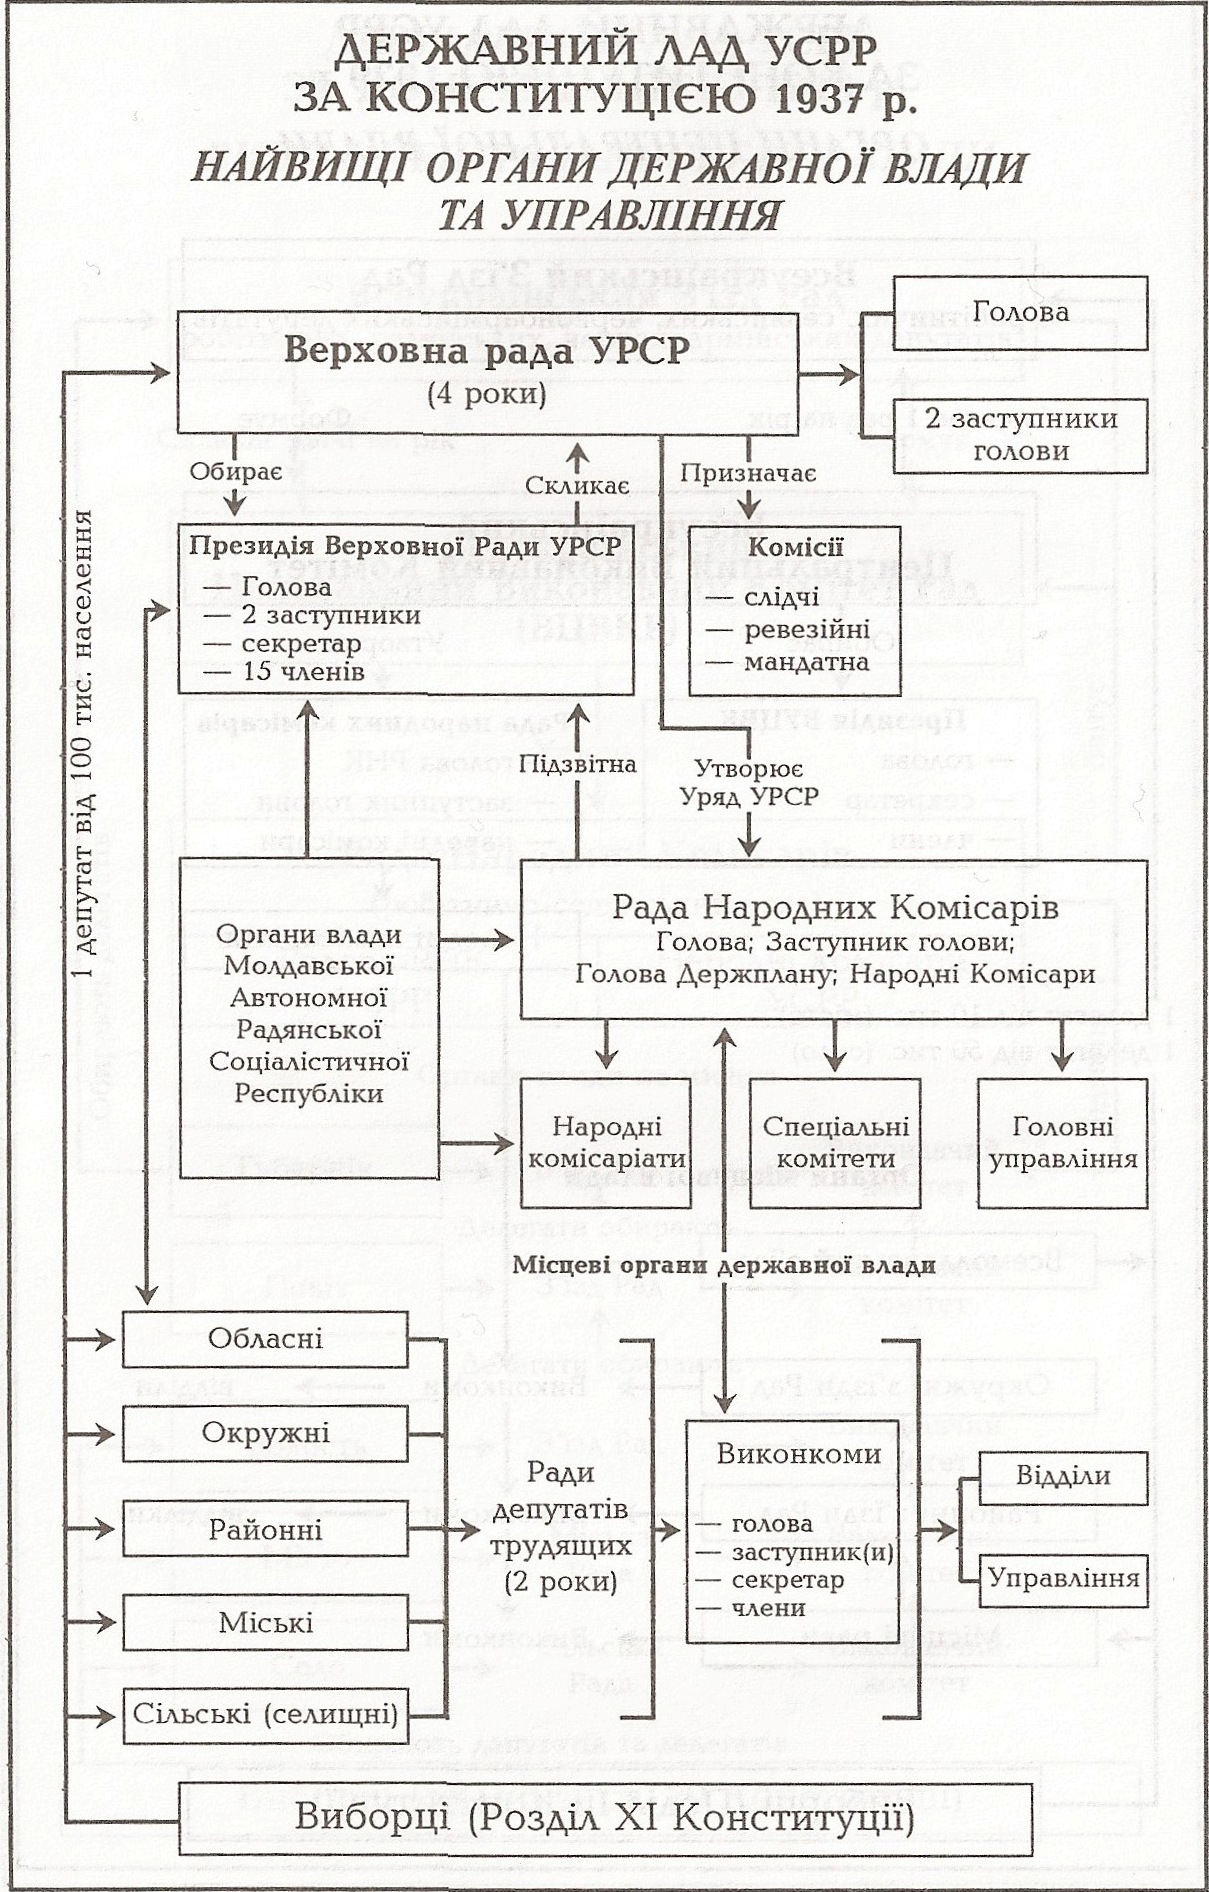 Таблица: Государственный Строй УССР по Конституции 1937